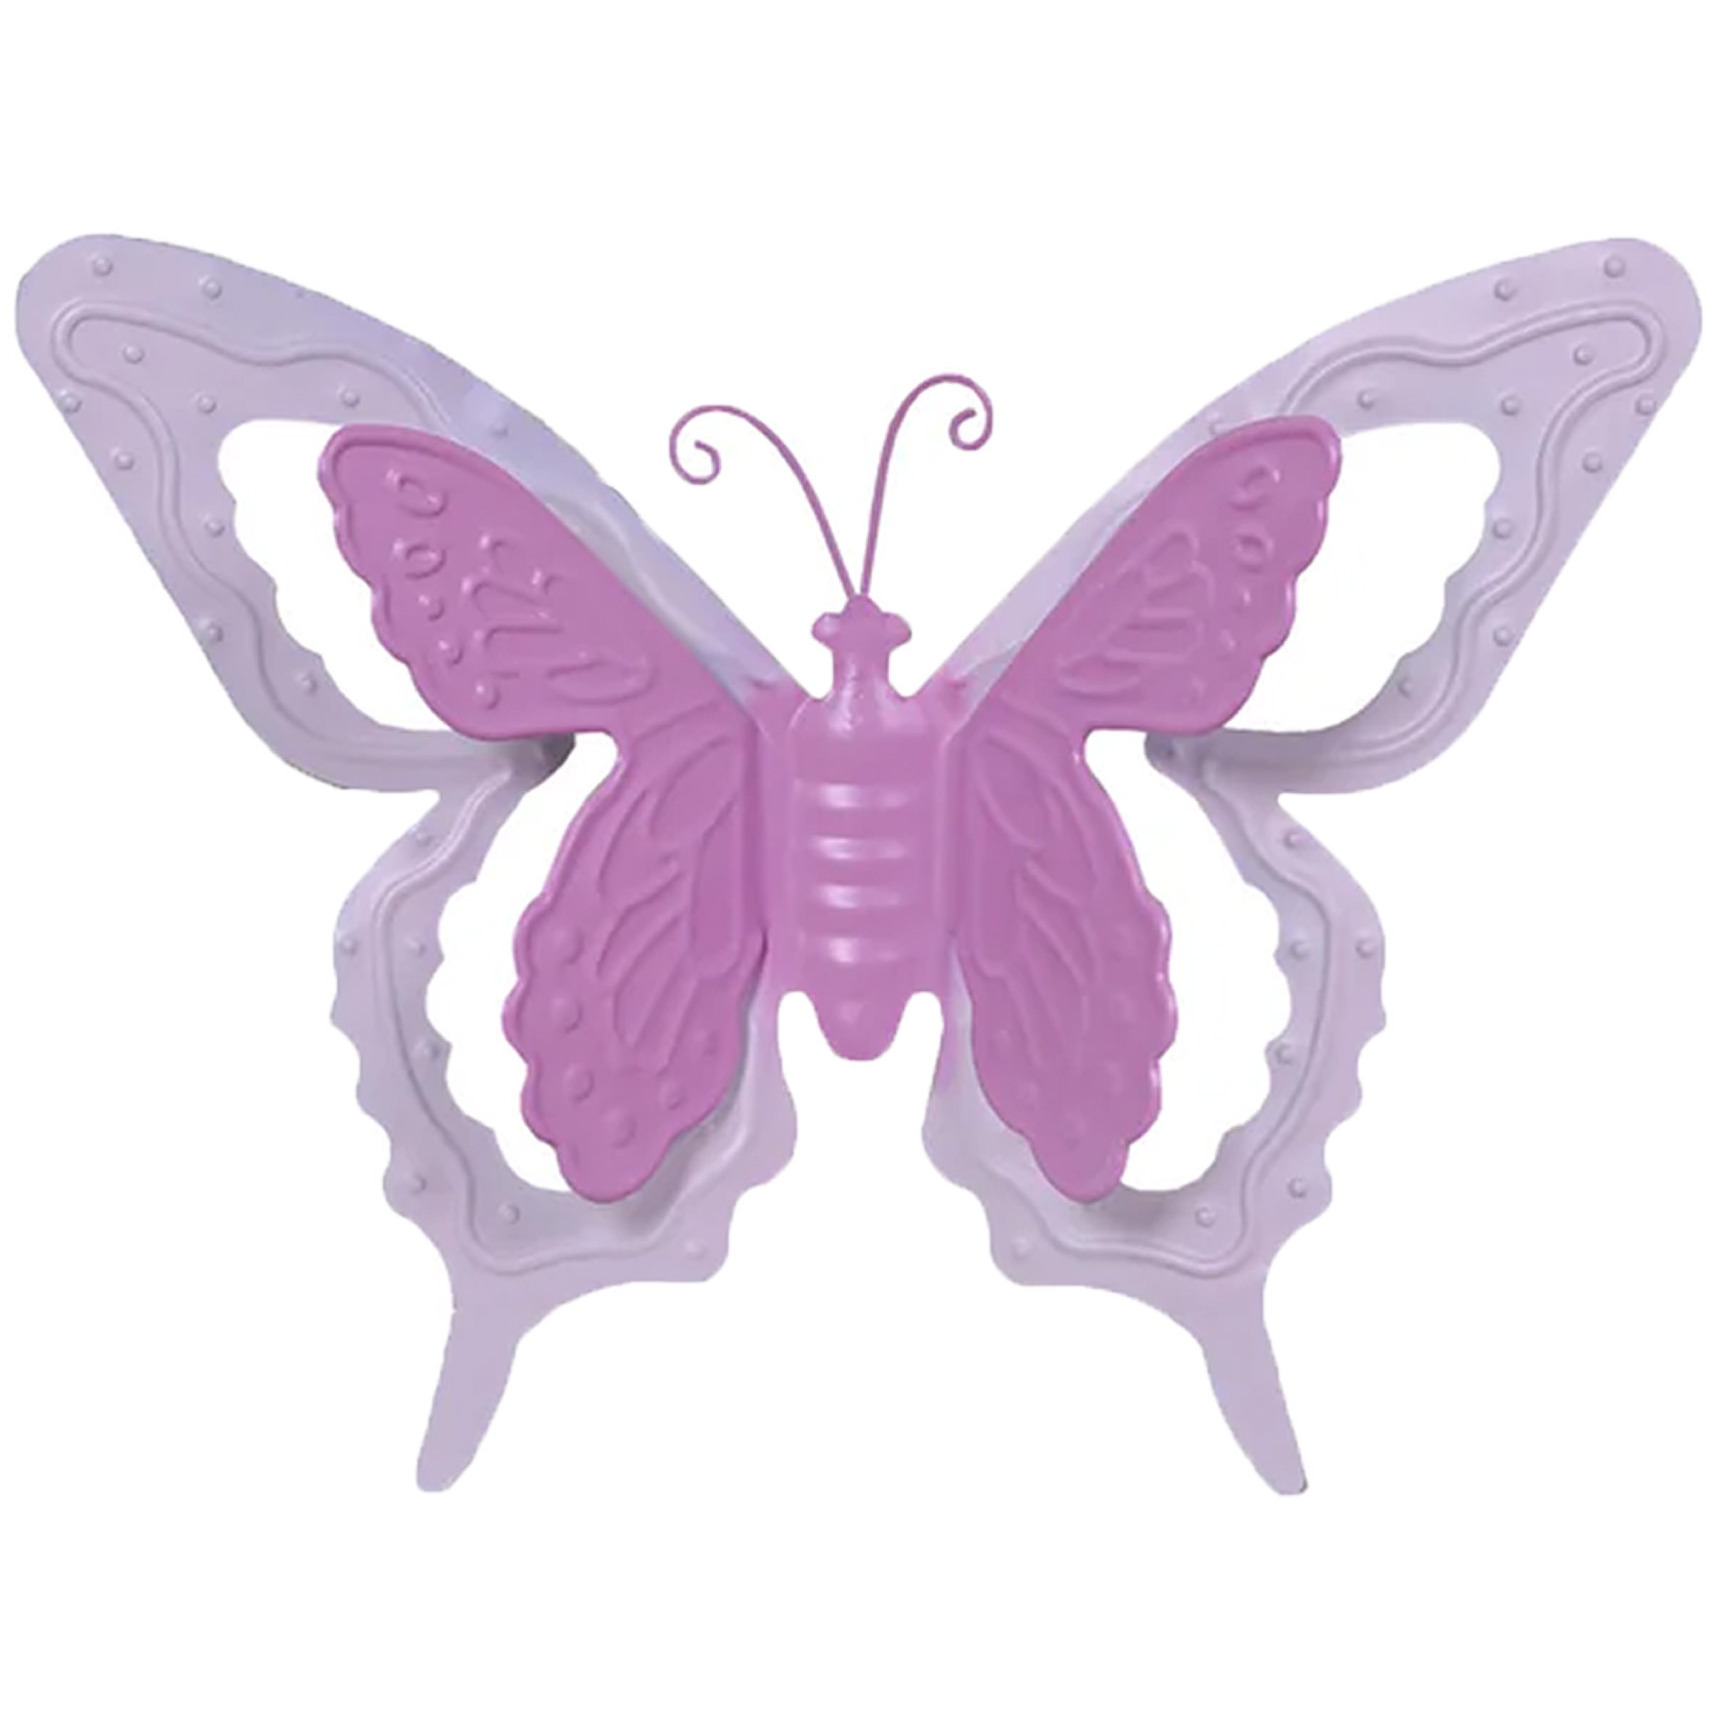 Tuin-schutting decoratie vlinder metaal roze 17 x 13 cm